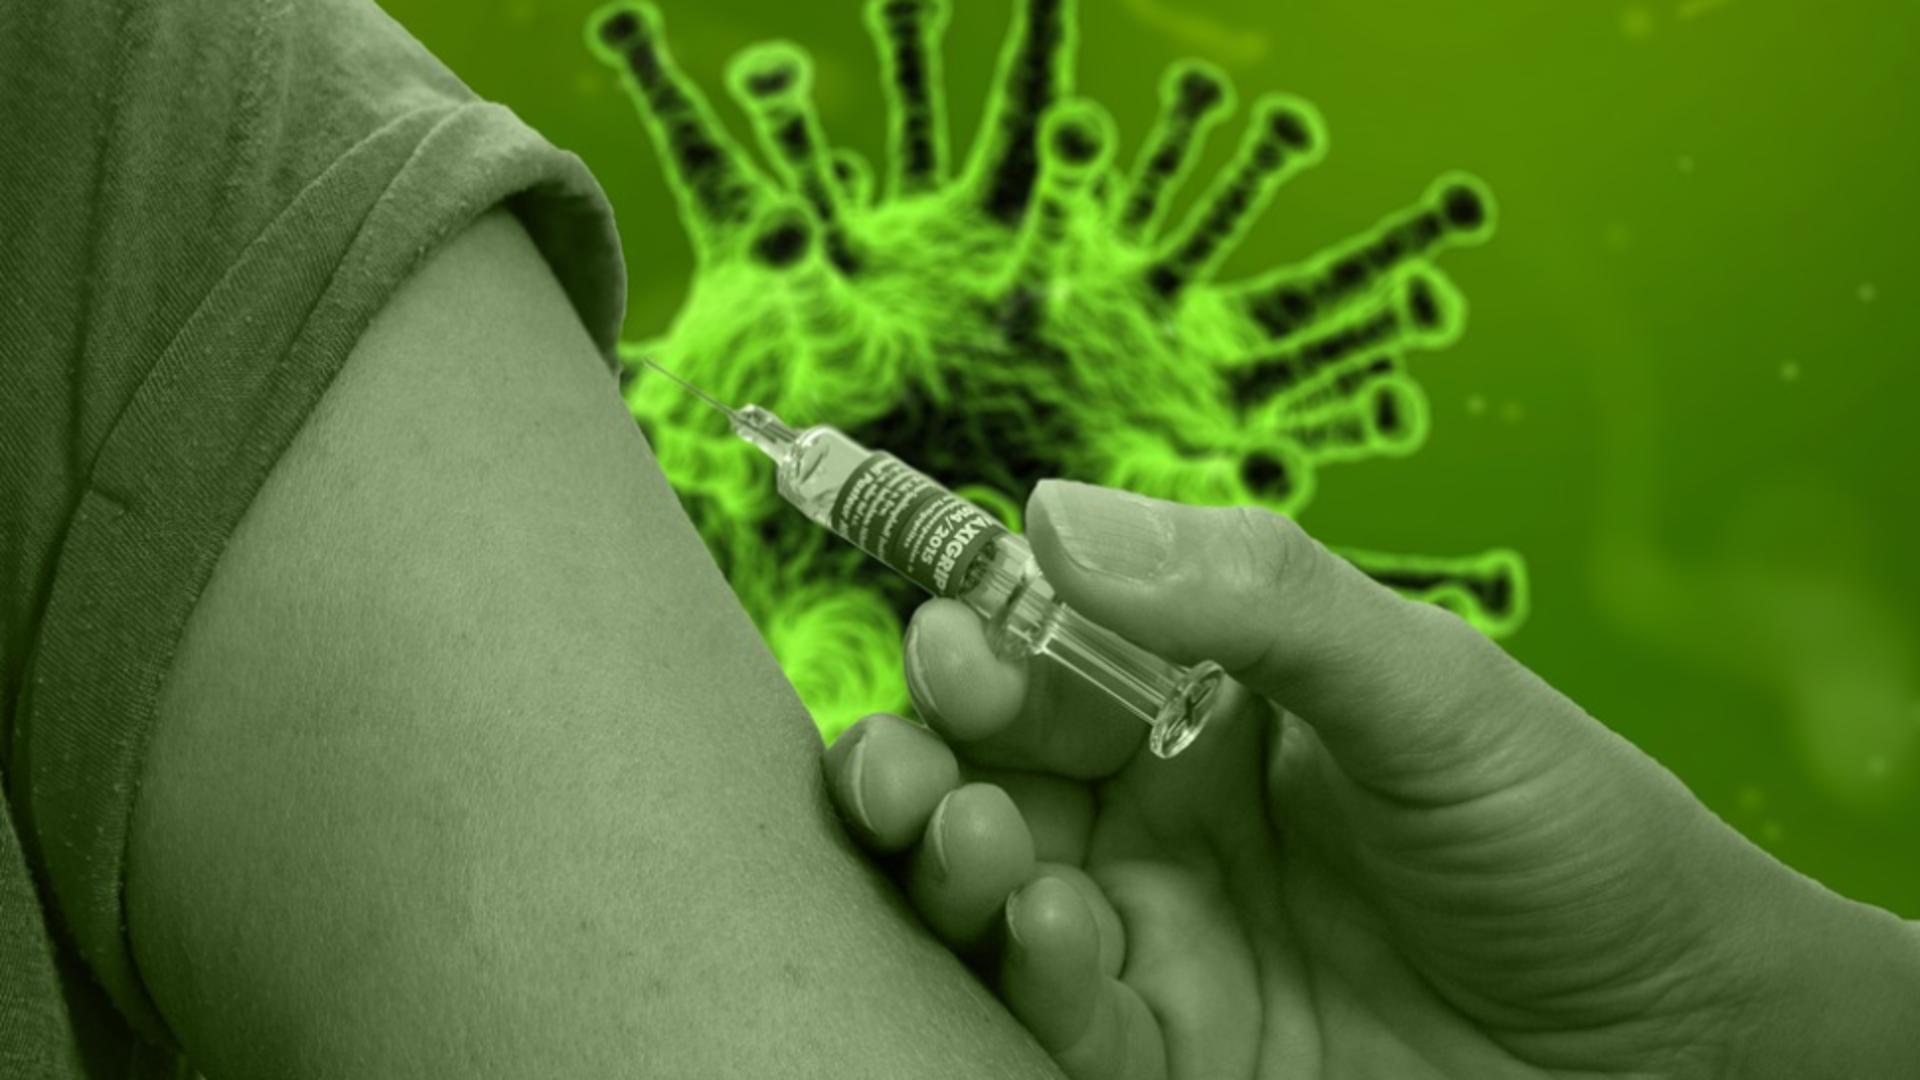 BILANȚ vaccinare anti-COVID-19 - 5 ianuarie 2021 - Numărul românilor imunizați, în creștere